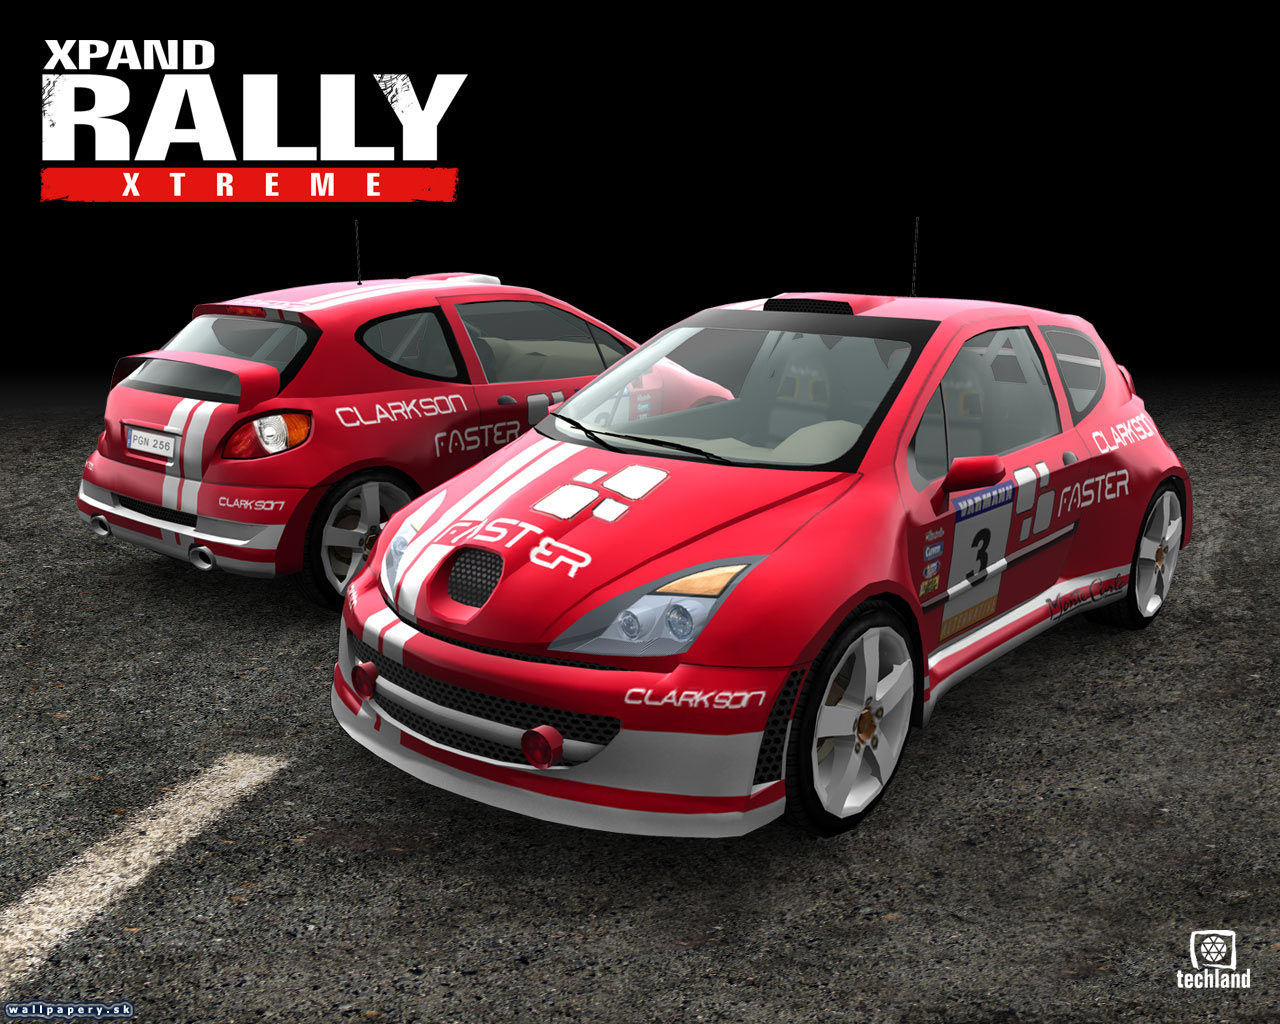 Xpand Rally Xtreme - wallpaper 4